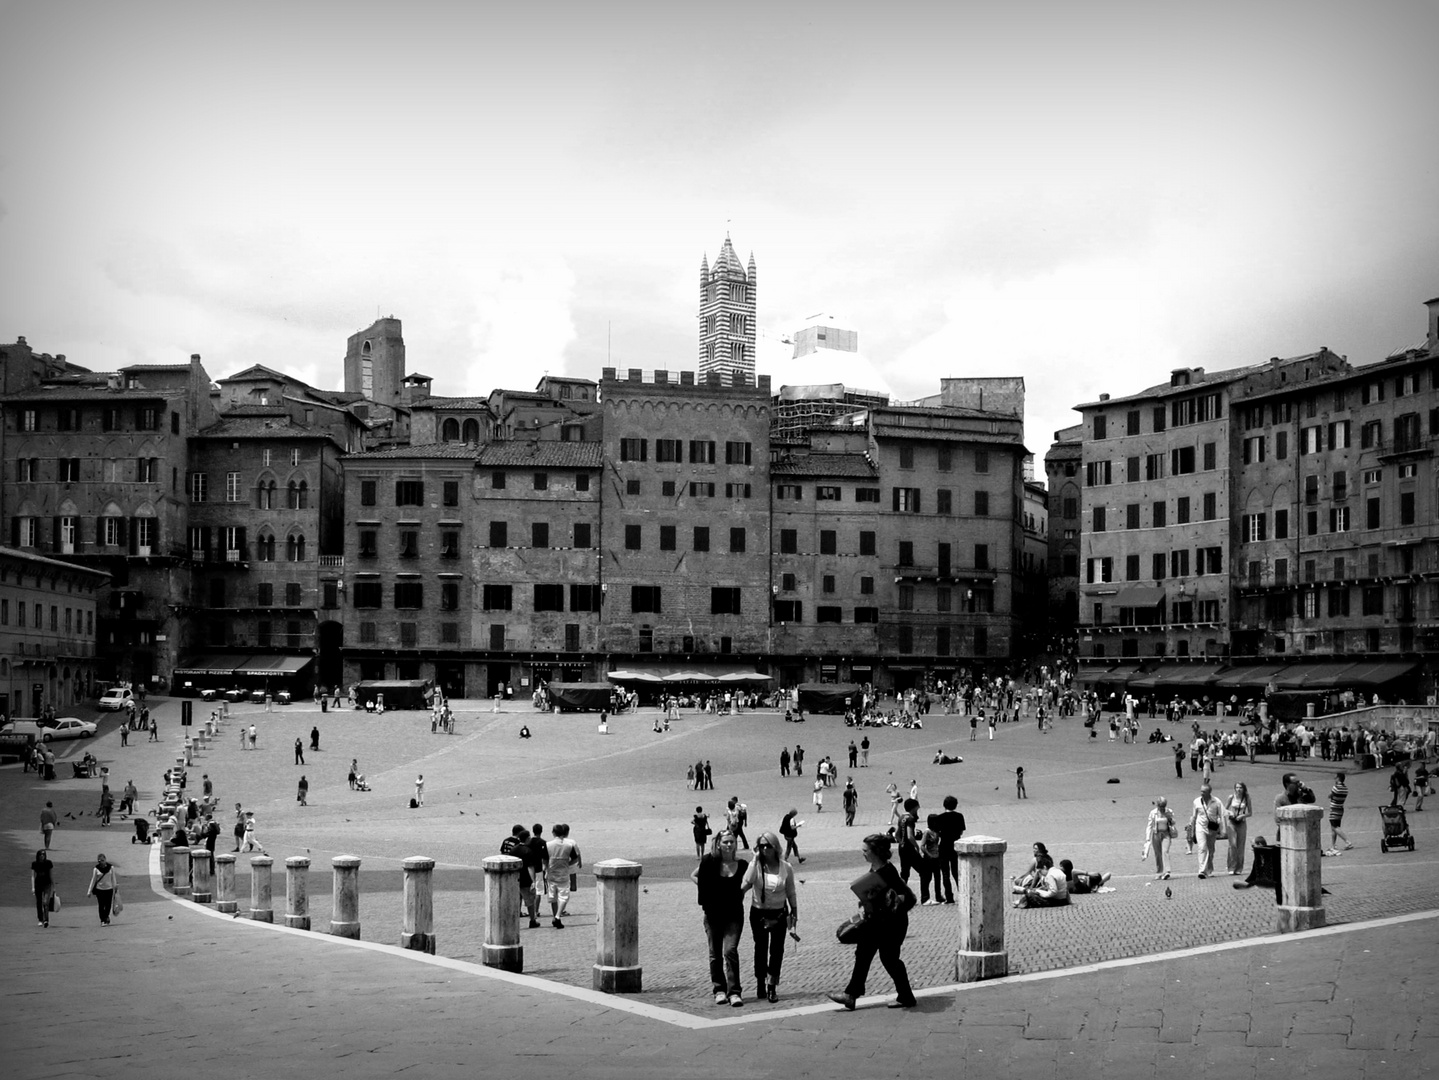  Piazza del Campo die Siena